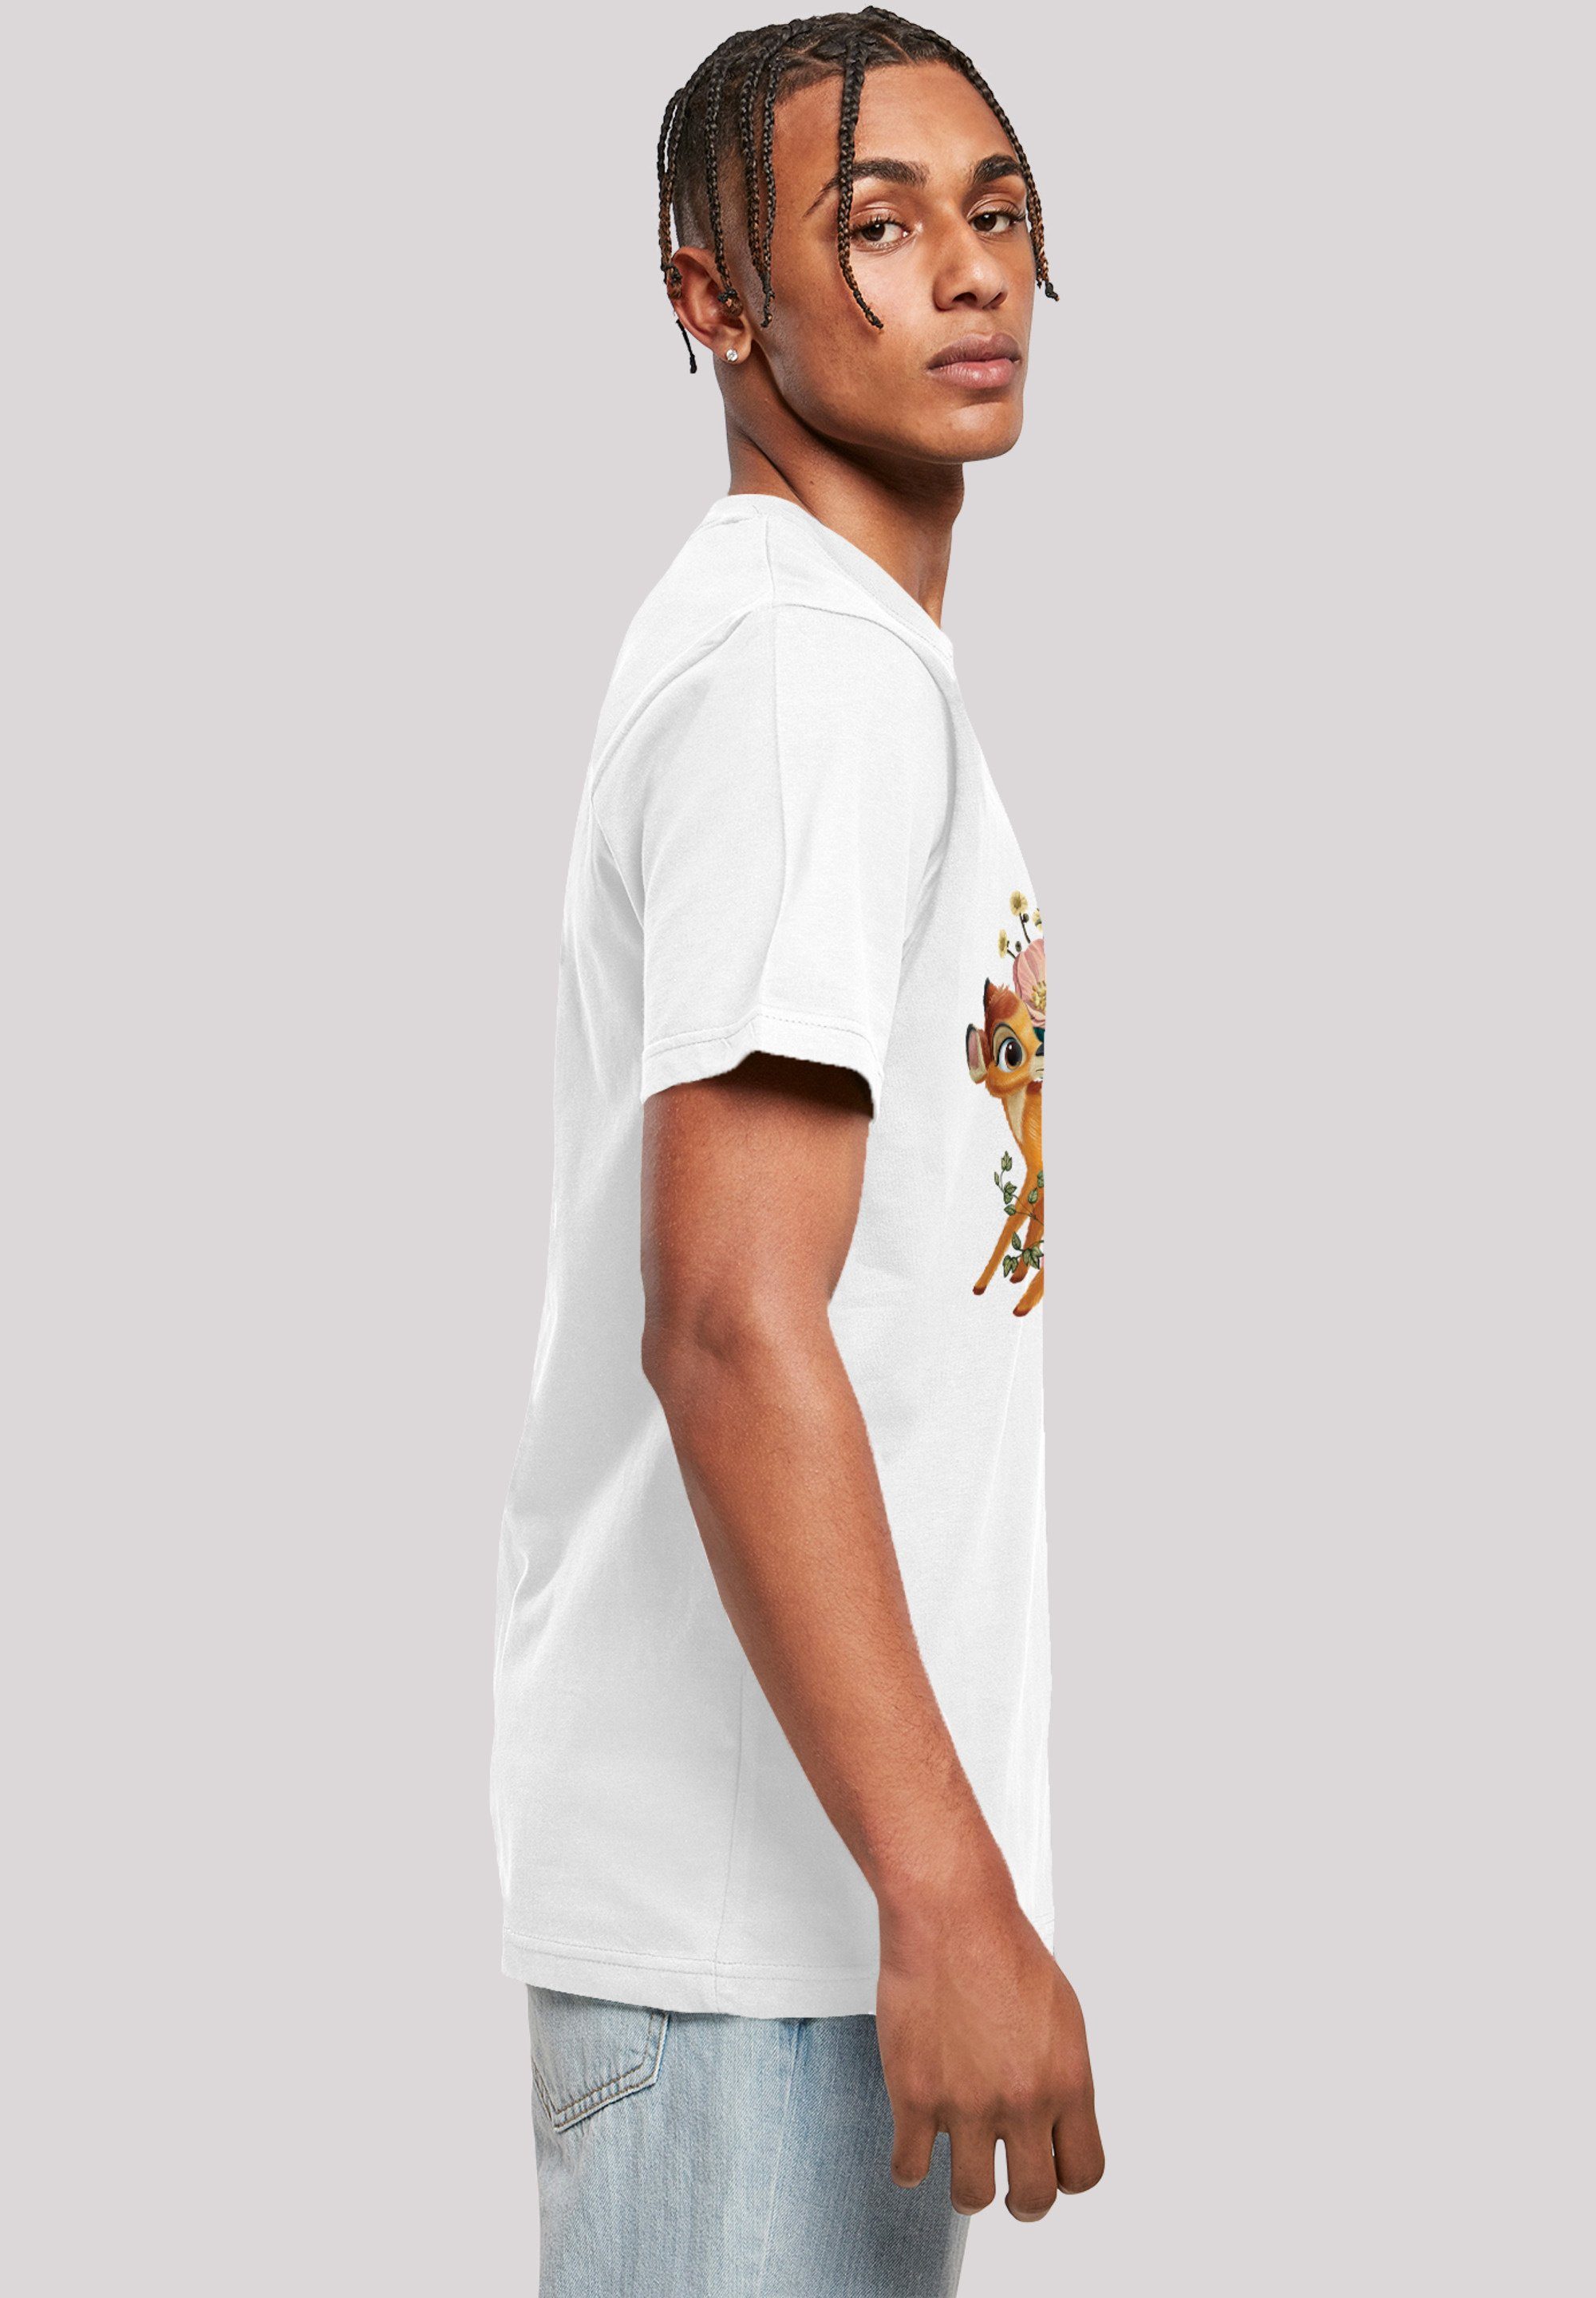 Bambi weiß Herren,Premium T-Shirt F4NT4STIC Meadow Disney Merch,Regular-Fit,Basic,Bedruckt